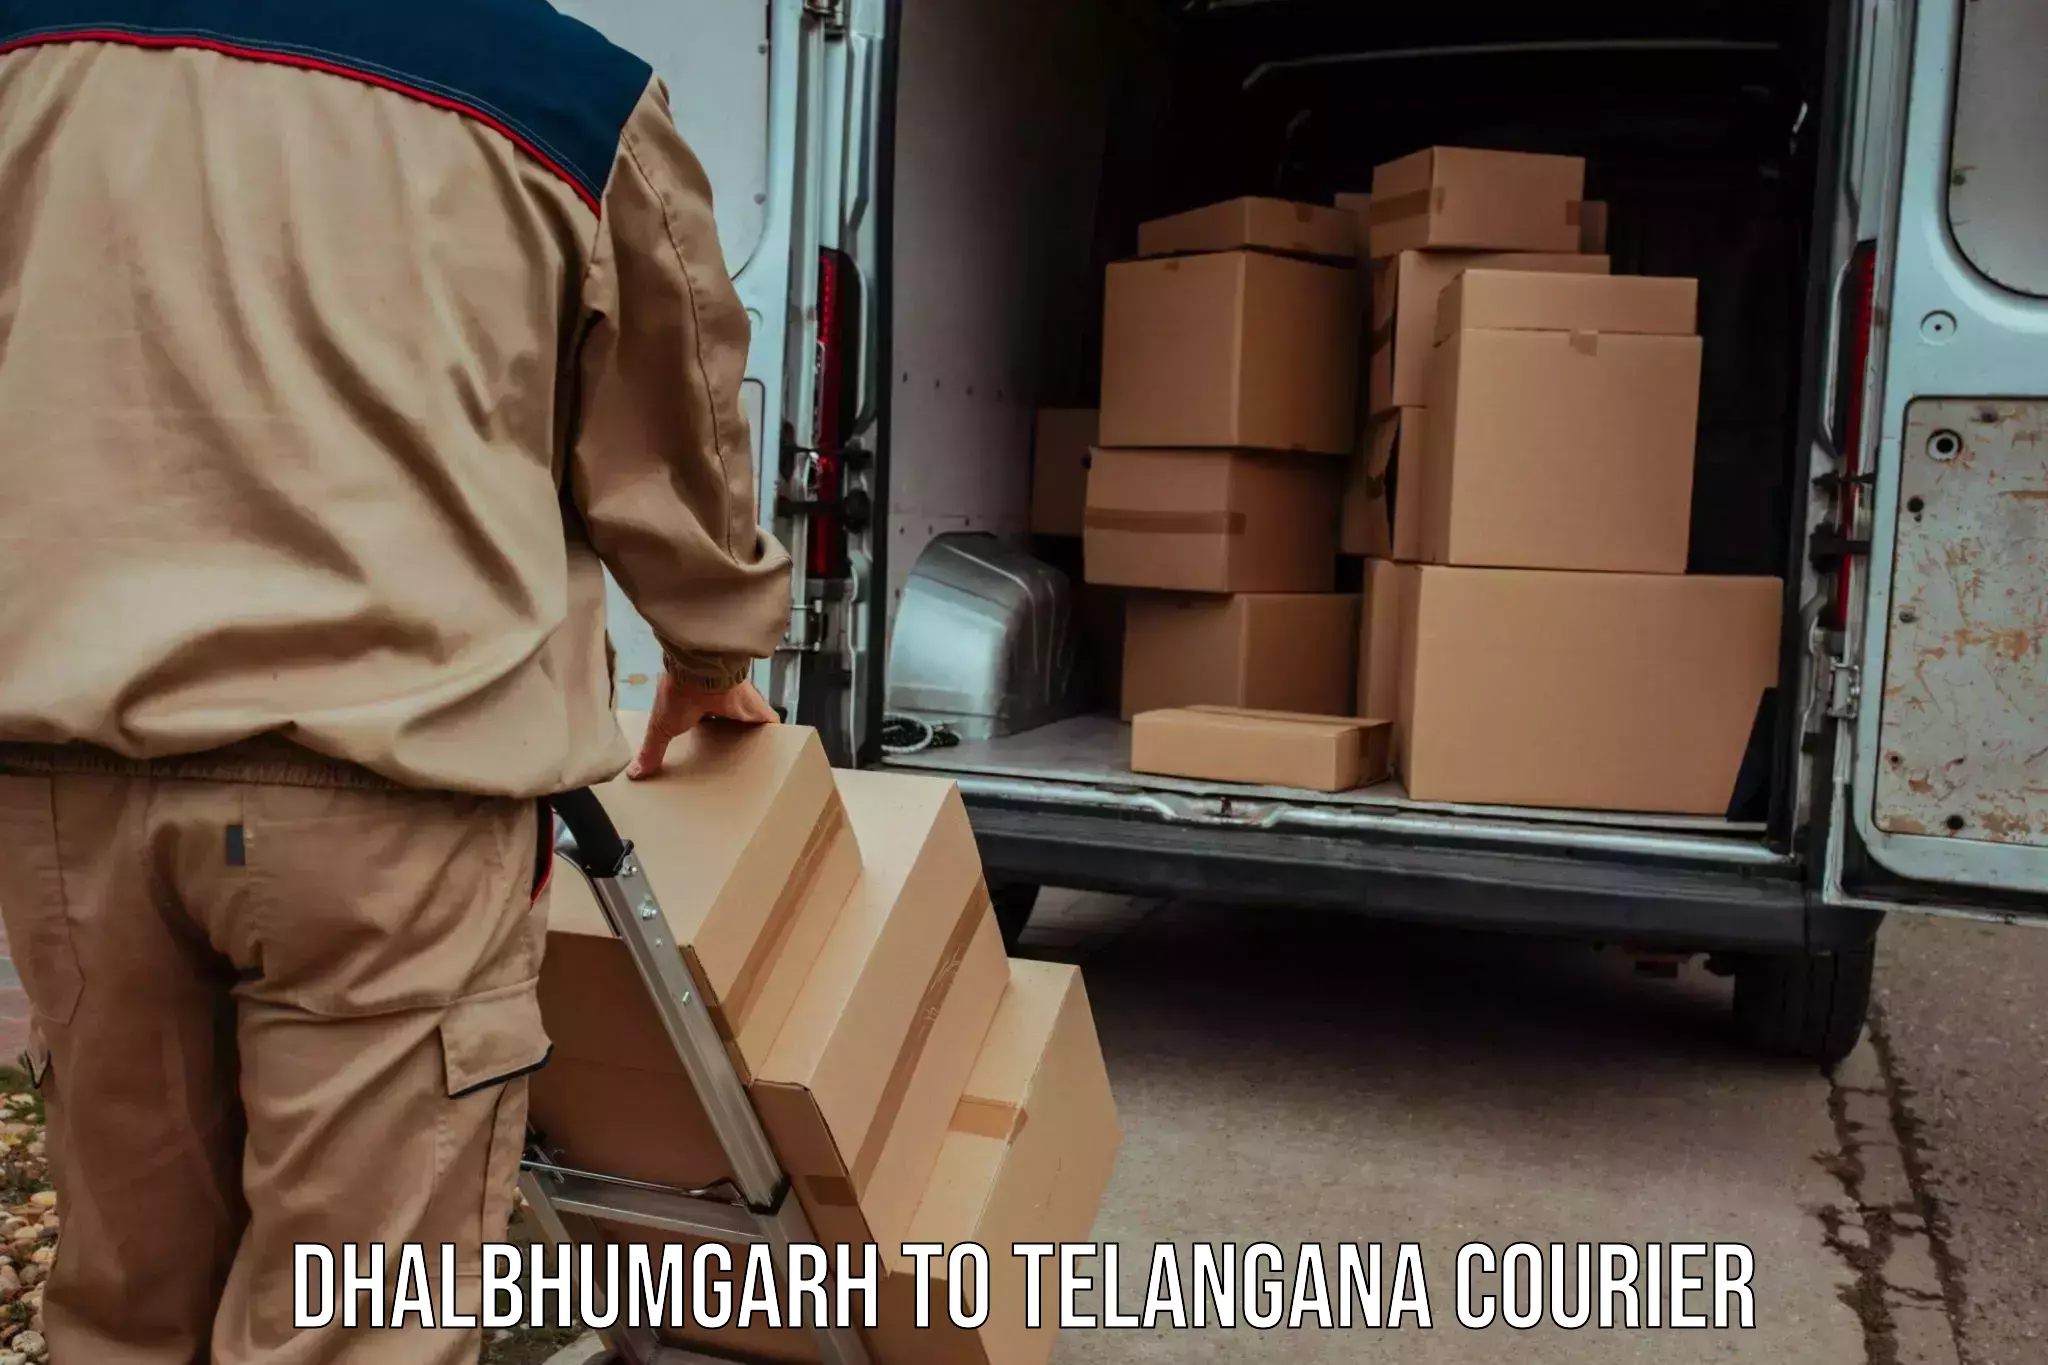 Expedited shipping methods Dhalbhumgarh to Telangana